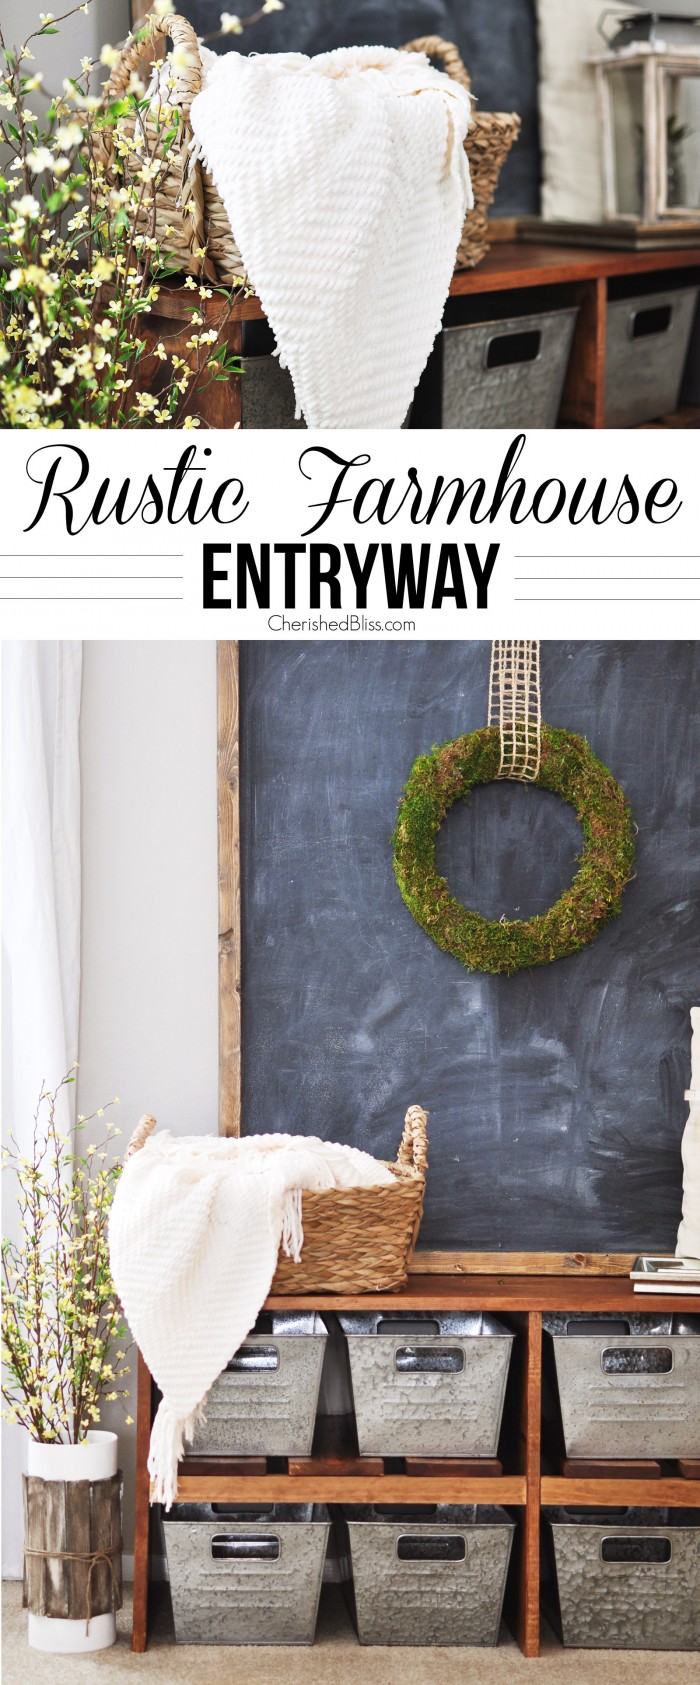 Rustic-Farmhouse-Entryway-700x1685